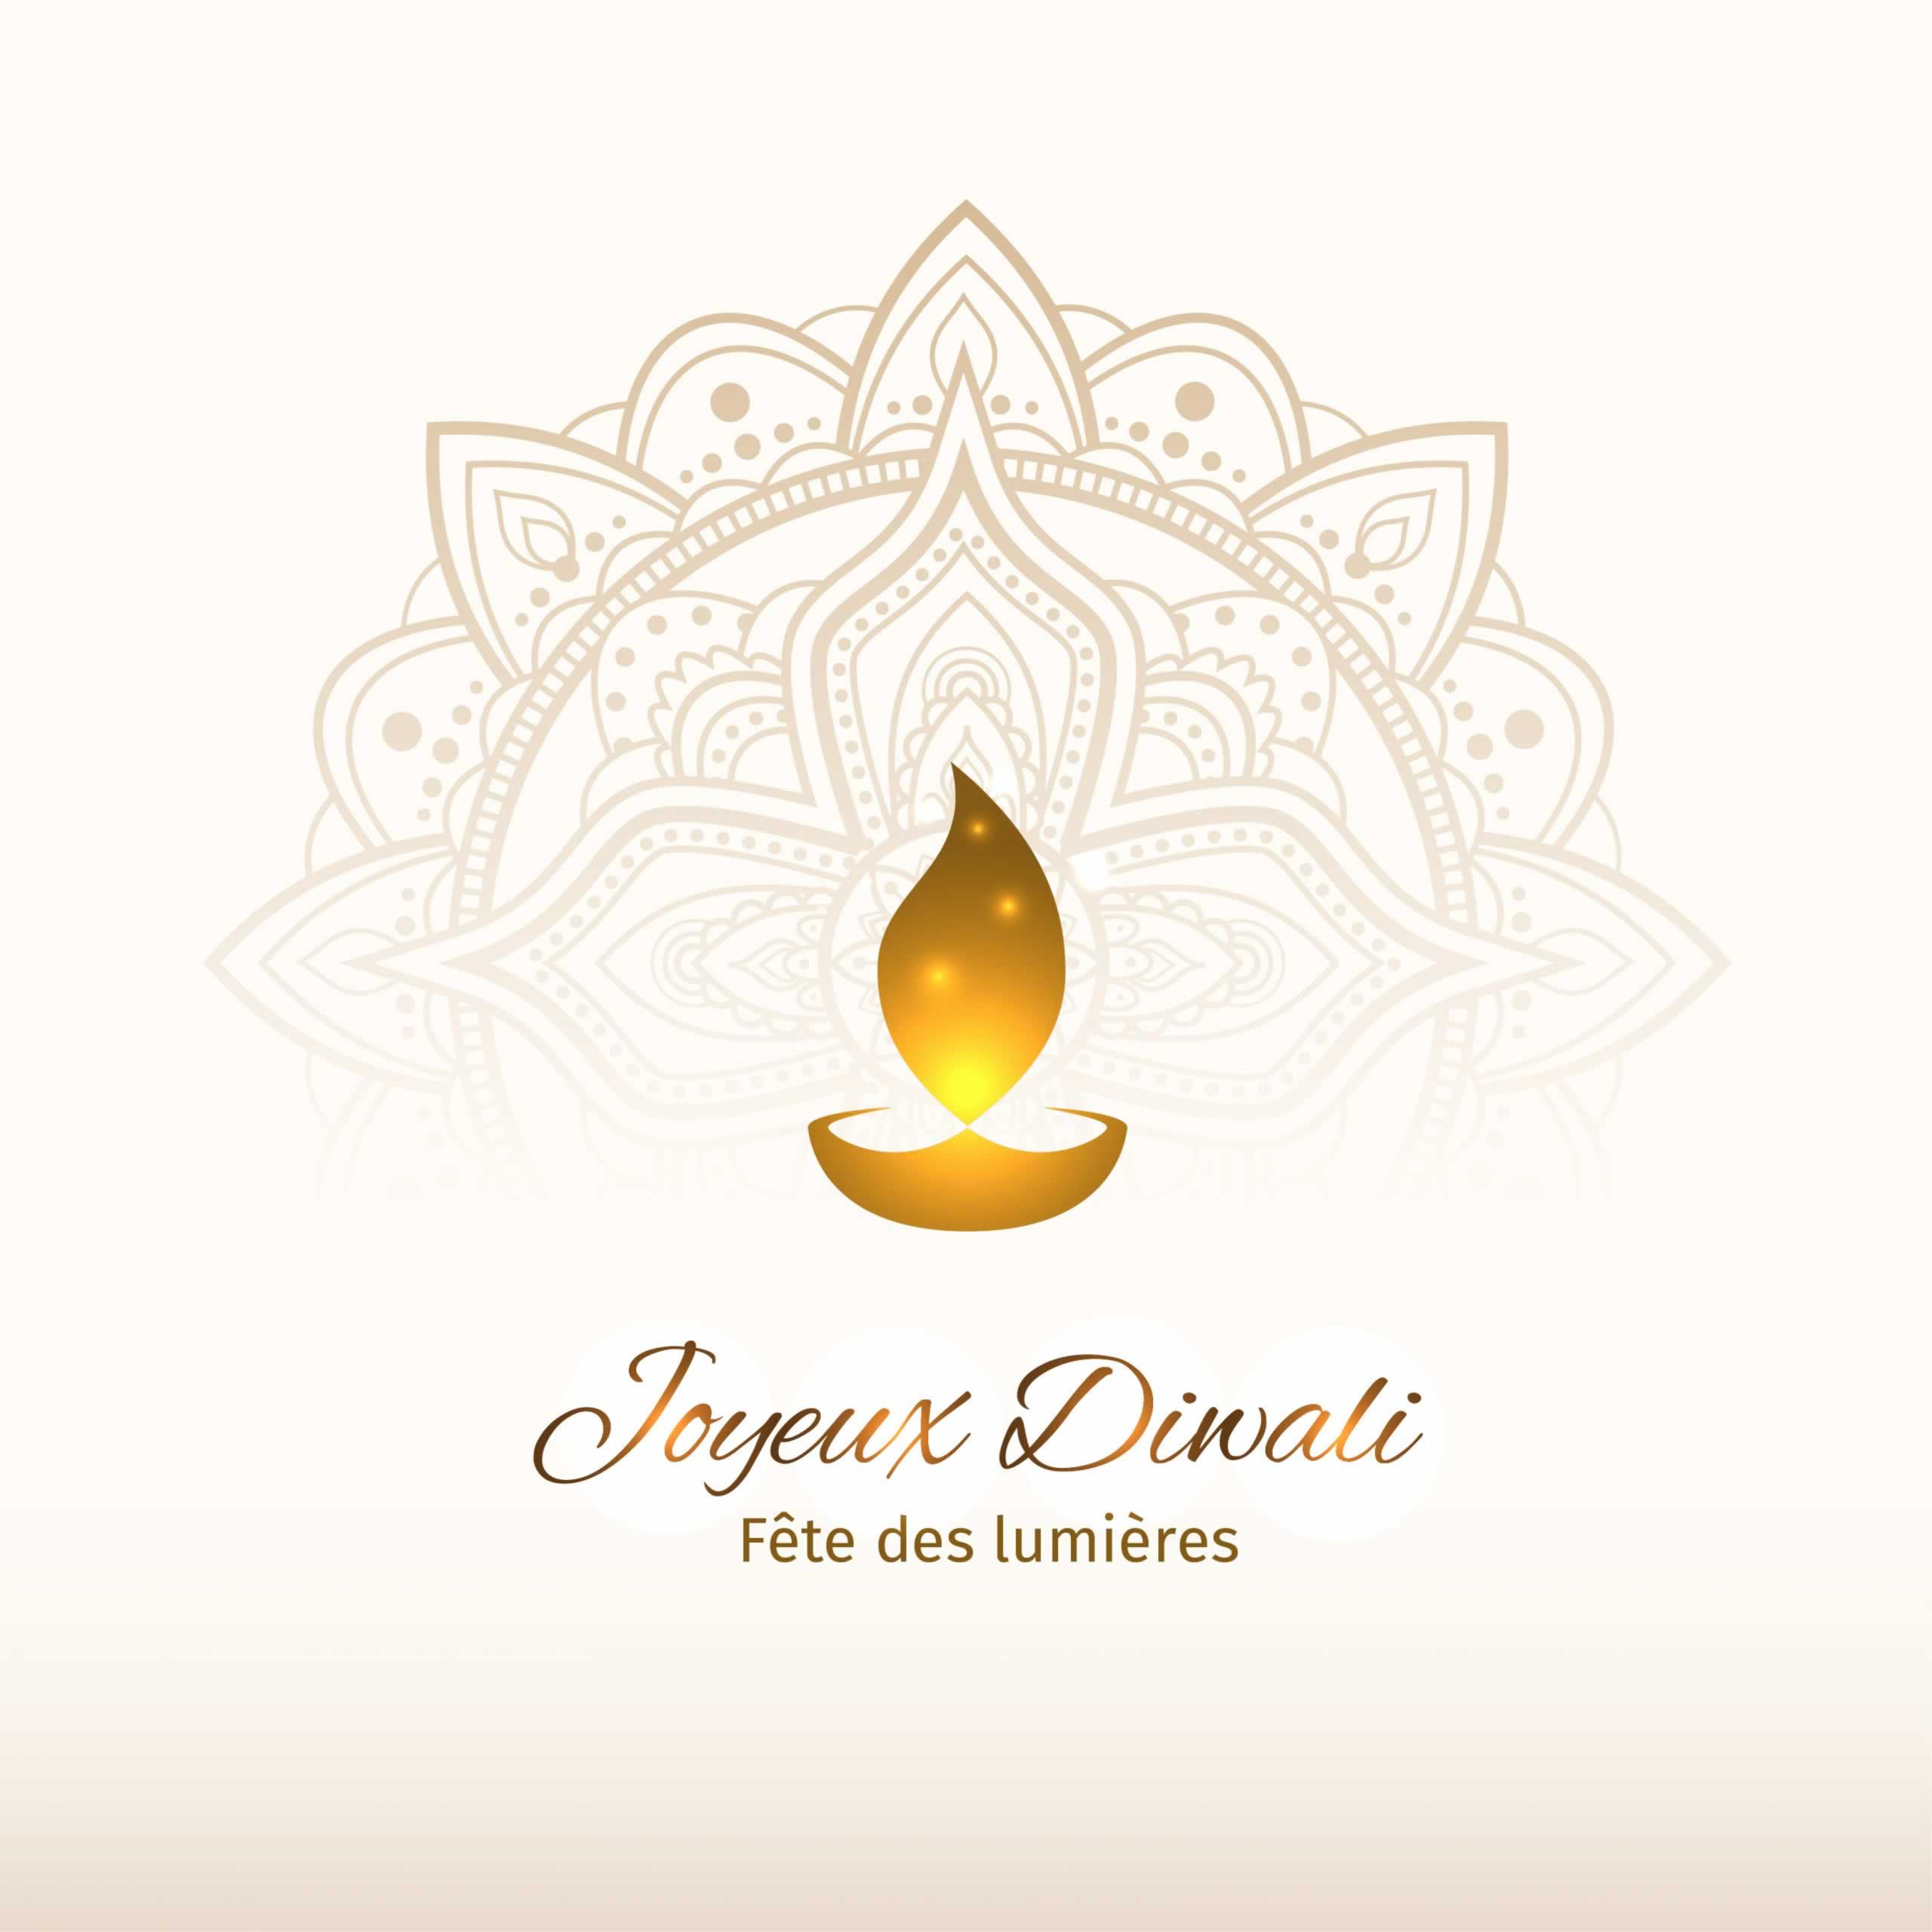 Une bougie sur une coupelle devant une couronne dorée et ornementée symbolisant Diwali, la fête des lumière dans la tradition hindoue